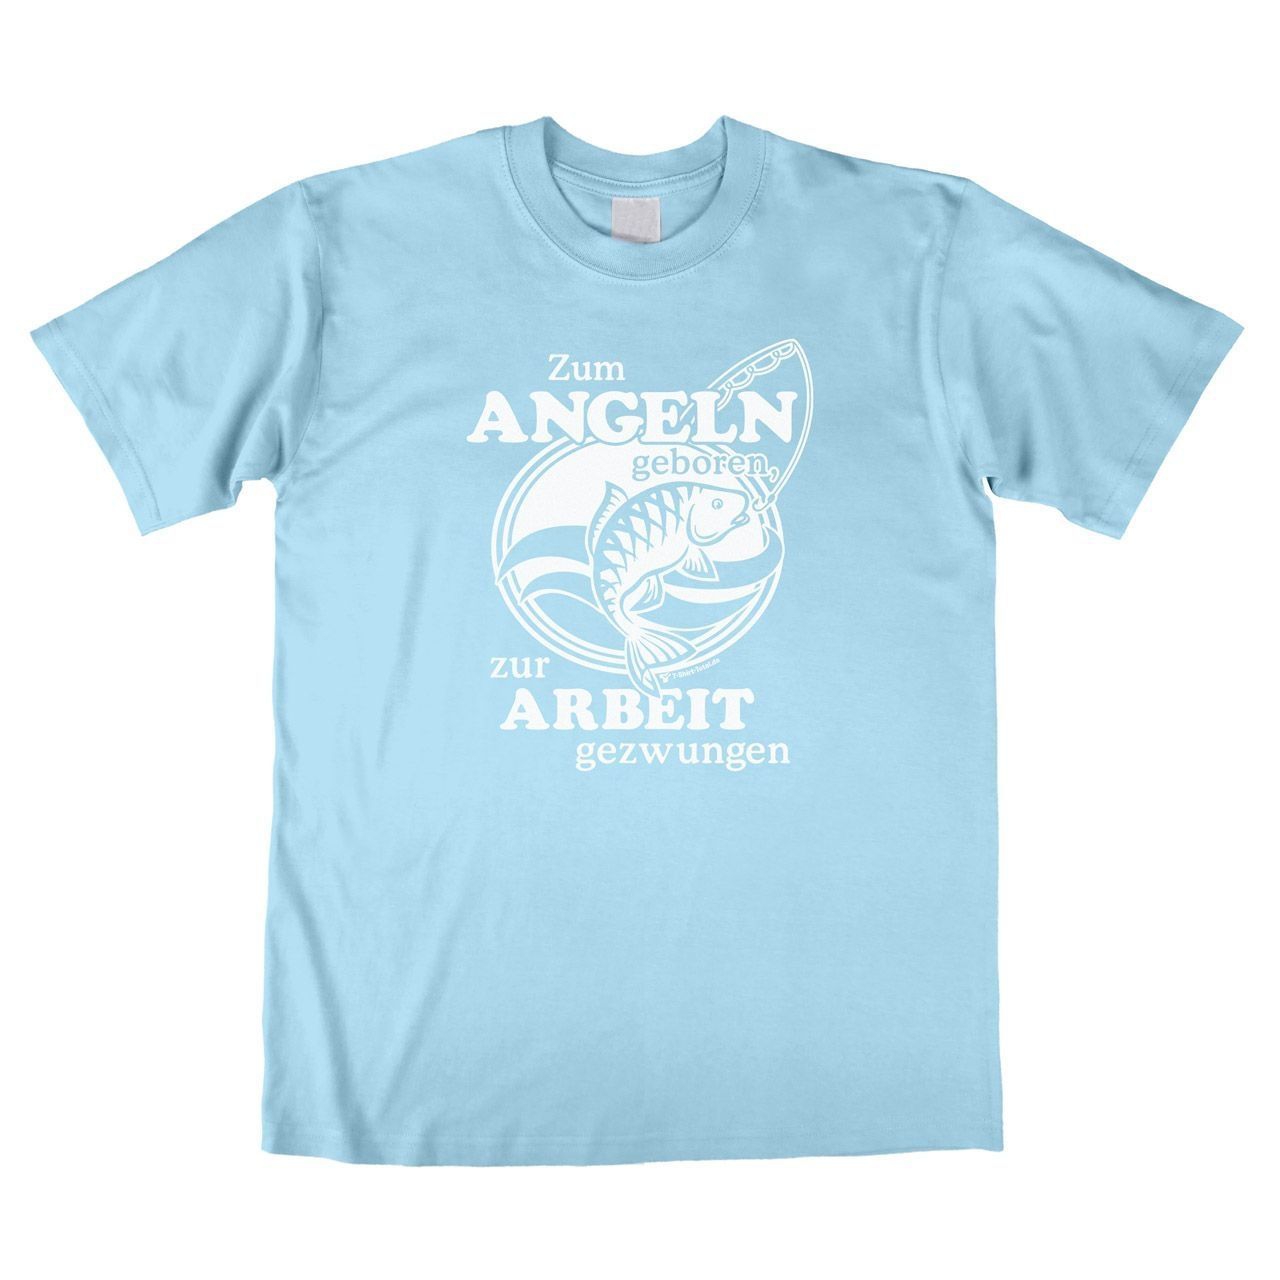 Zum Angeln geboren Unisex T-Shirt hellblau Large